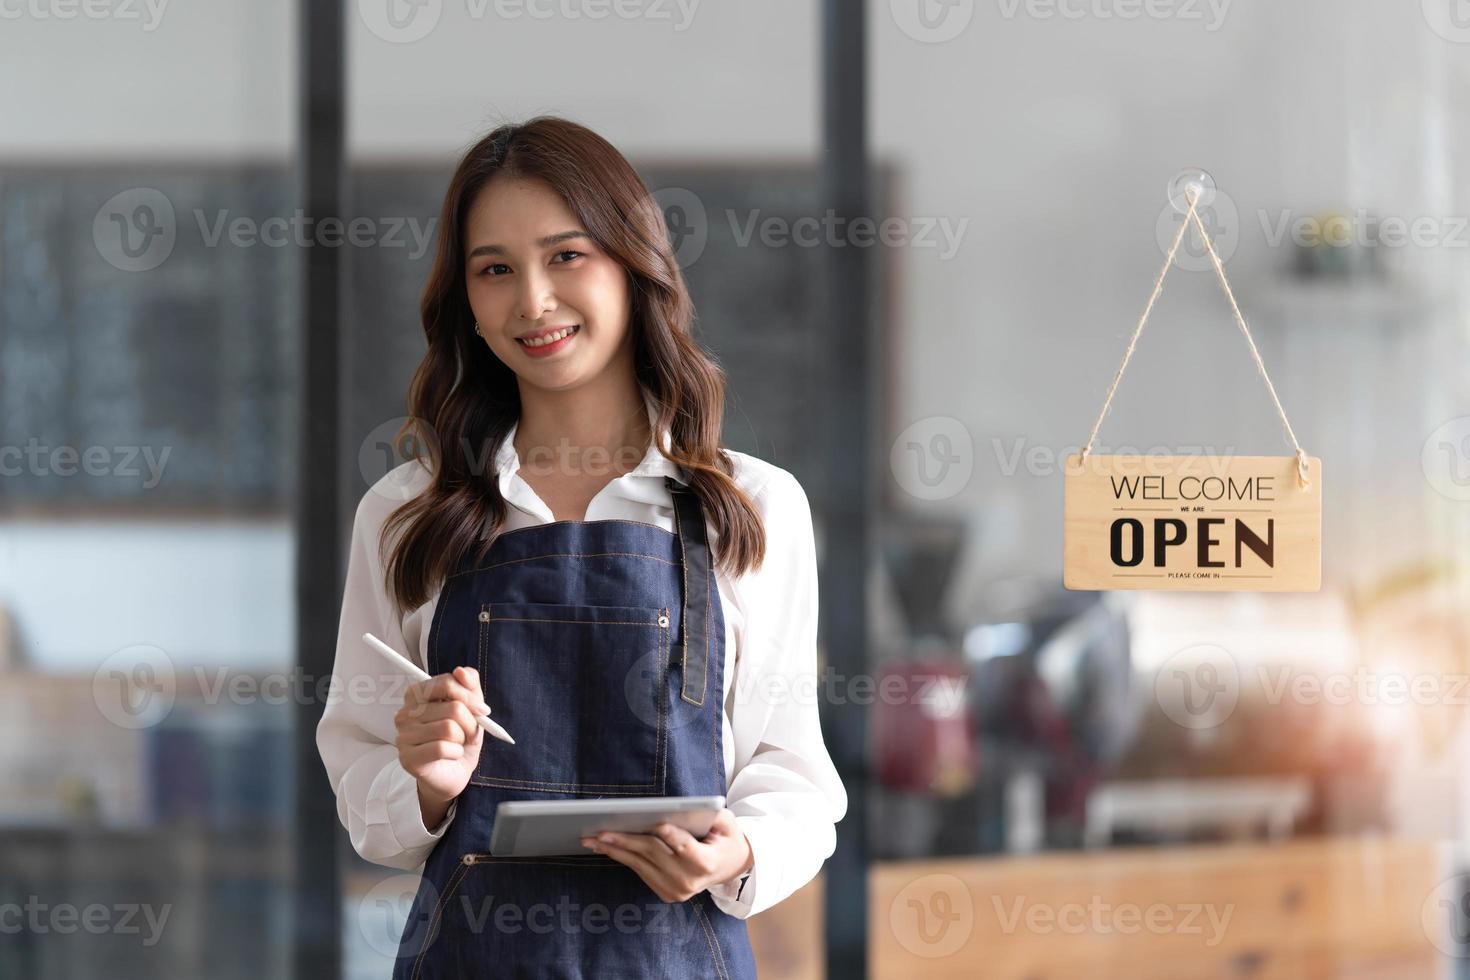 mooi Aziatisch jong barista vrouw in schort Holding tablet en staand in voorkant van de deur van cafe met Open teken bord. bedrijf eigenaar opstarten concept. foto